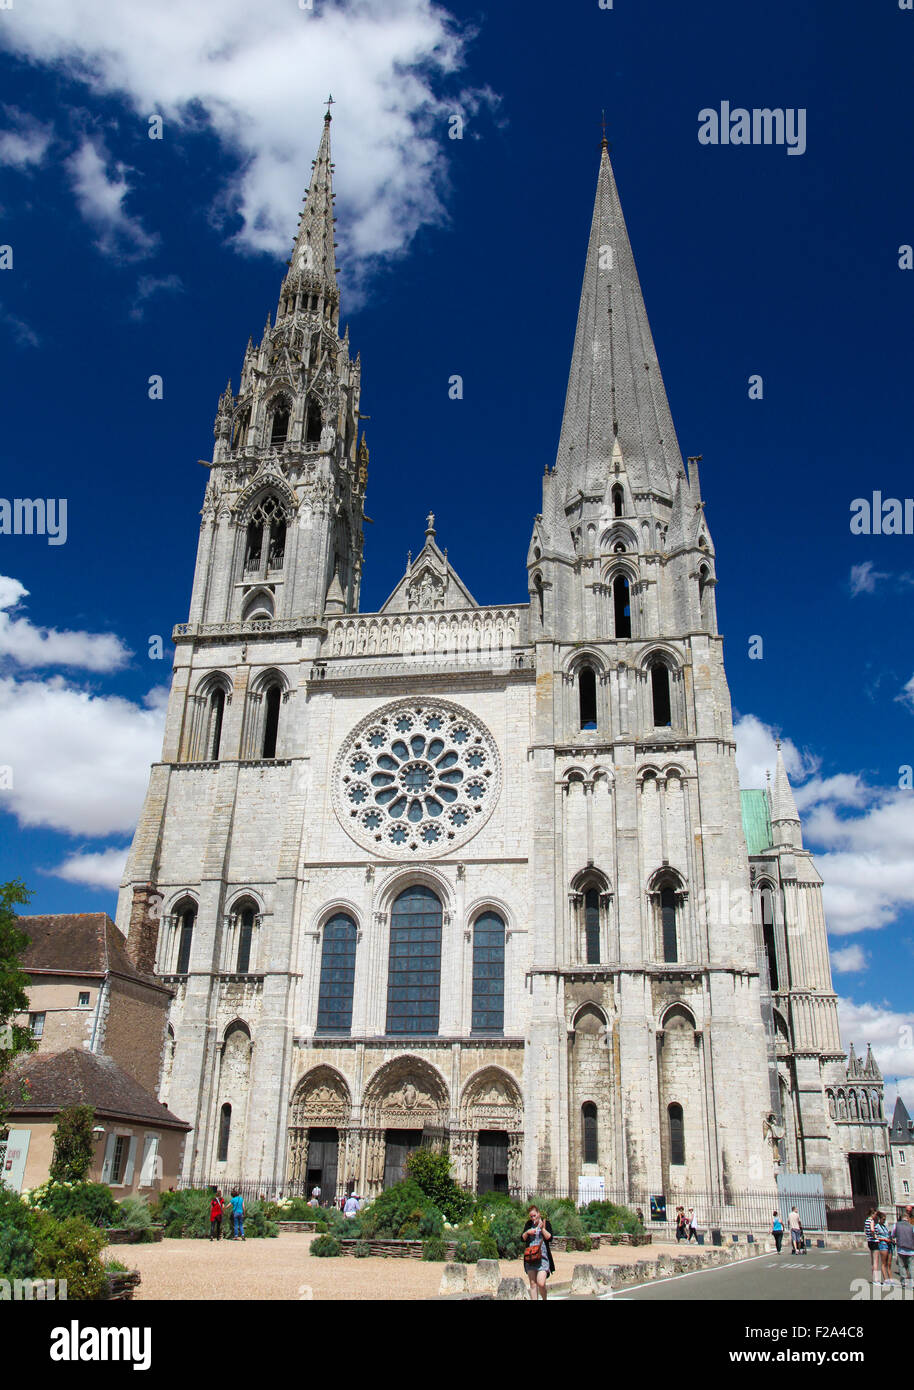 CHARTRES, FRANCE - 21 juillet 2015 : Cathédrale de Notre-Dame de Chartres, une cité médiévale cathédrale de Chartres, France Banque D'Images